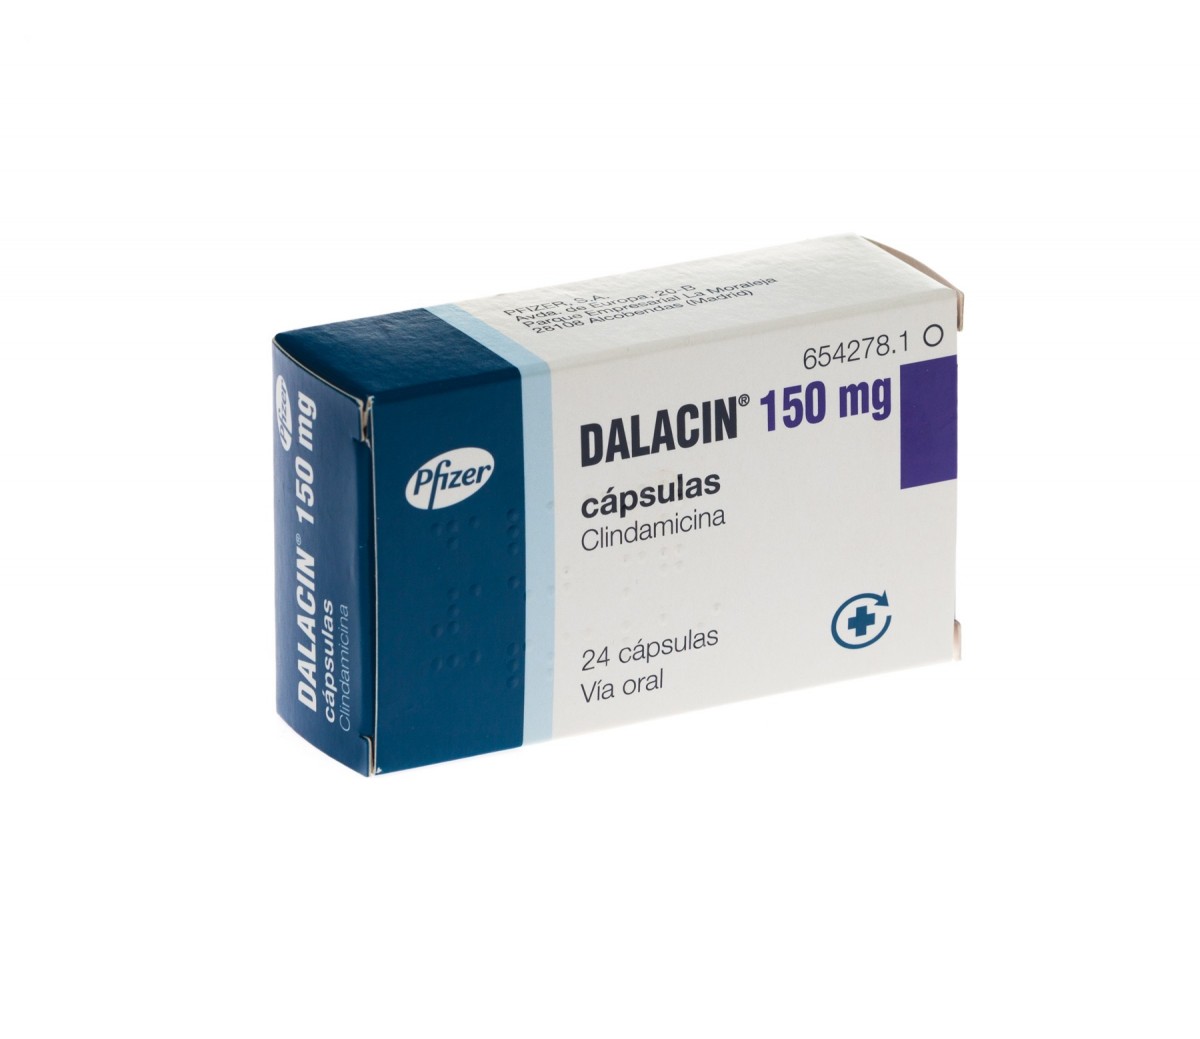 DALACIN 150 mg CAPSULAS DURAS , 24 cápsulas fotografía del envase.